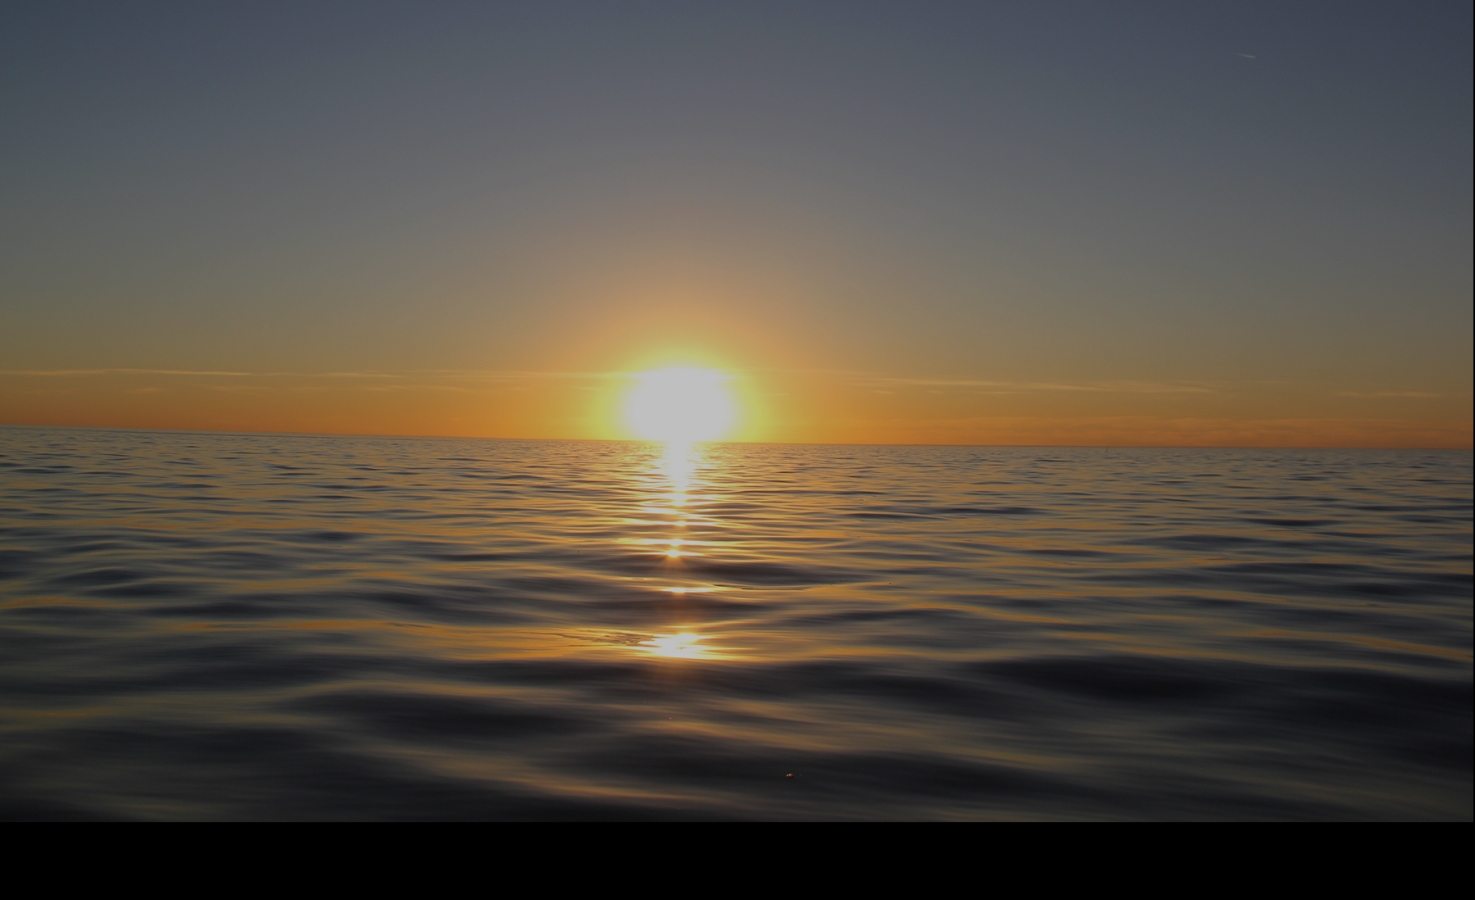 Ocean sunset taken from aboard Pacific Ocean Charters